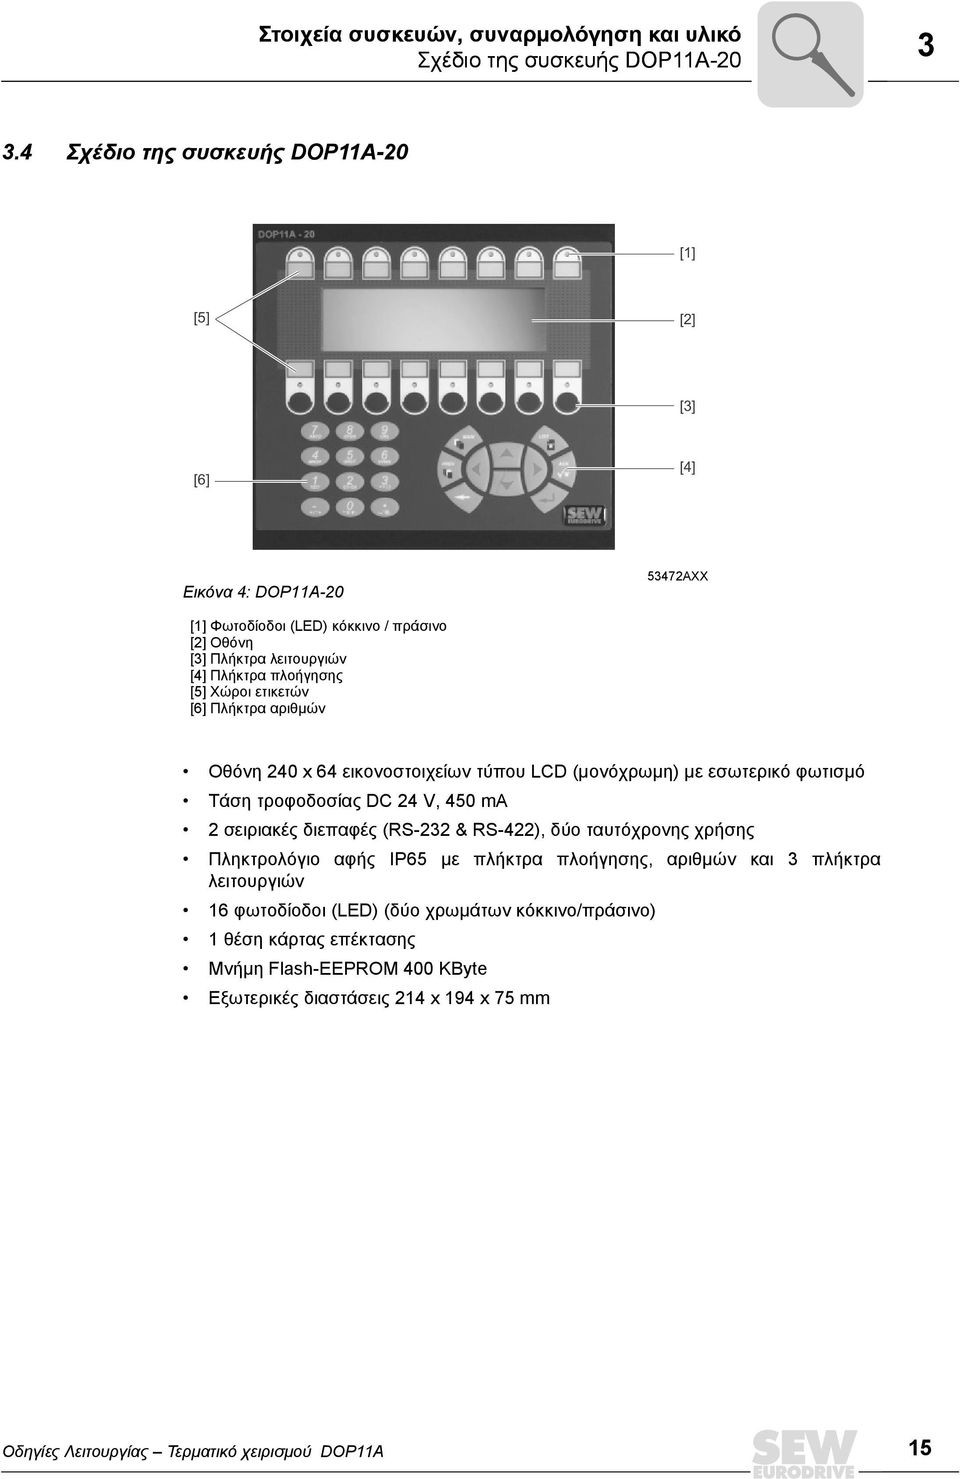 Χώροι ετικετών [6] Πλήκτρα αριθµών Οθόνη 240 x 64 εικονοστοιχείων τύπου LCD (µονόχρωµη) µε εσωτερικό φωτισµό Τάση τροφοδοσίας DC 24 V, 450 ma 2 σειριακές διεπαφές (RS-232 & RS-422),